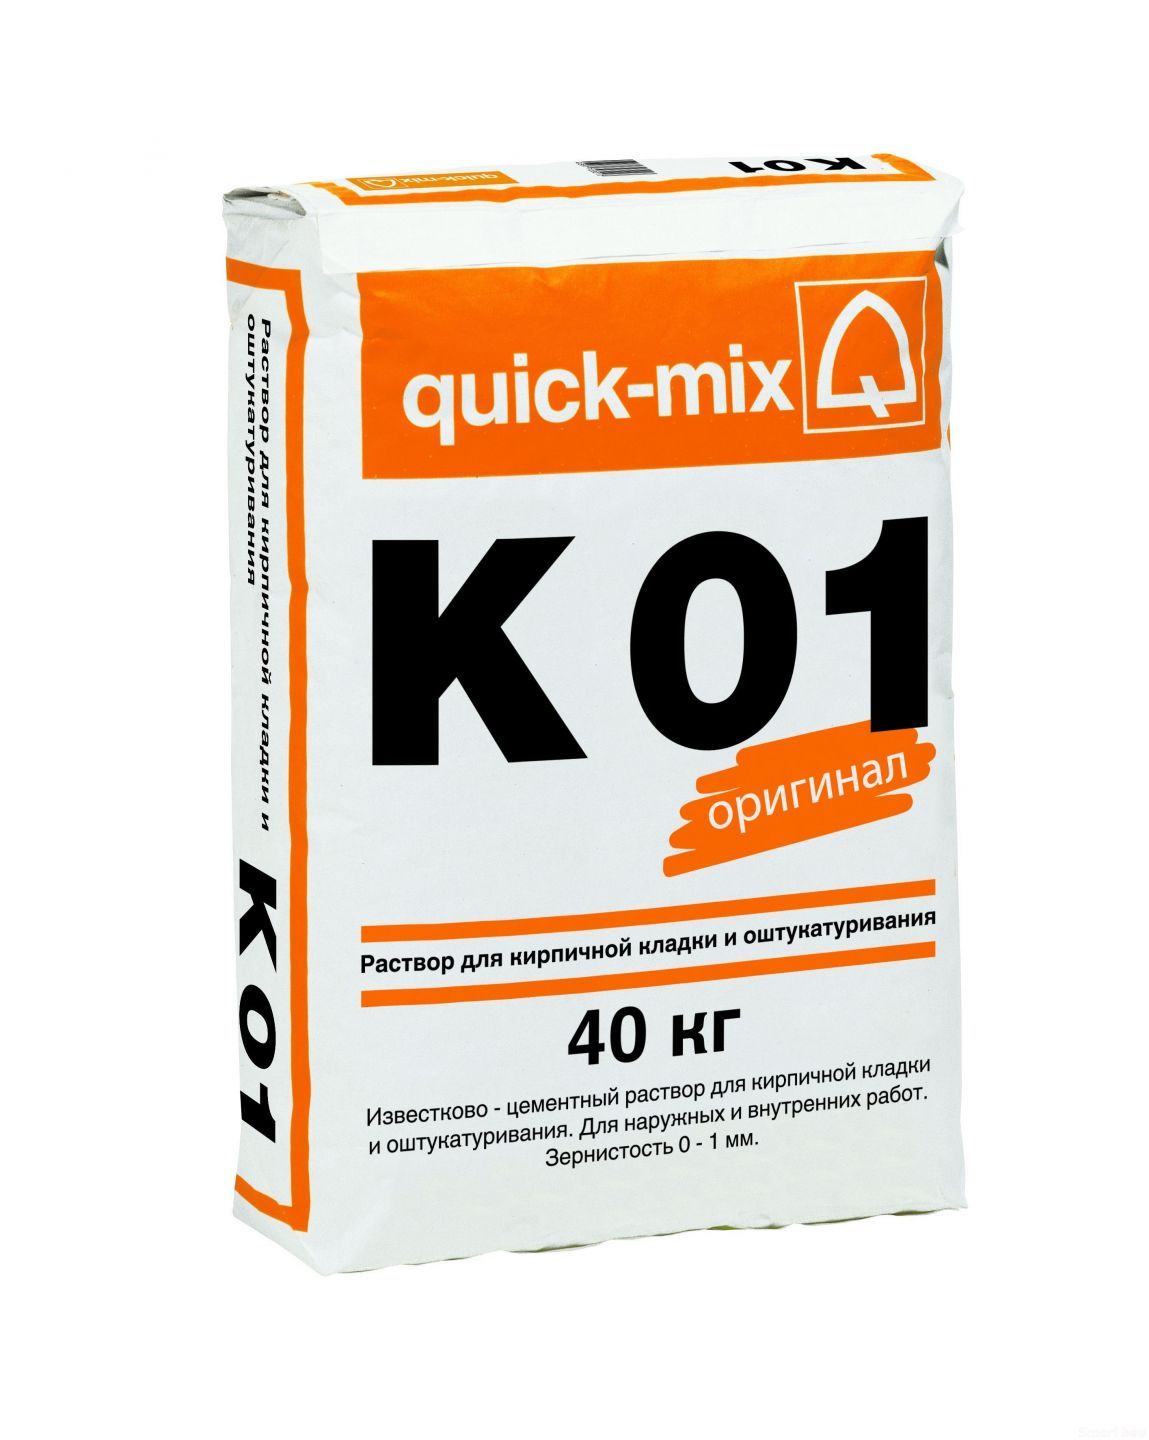 Известково-цементный раствор quick-mix K 01